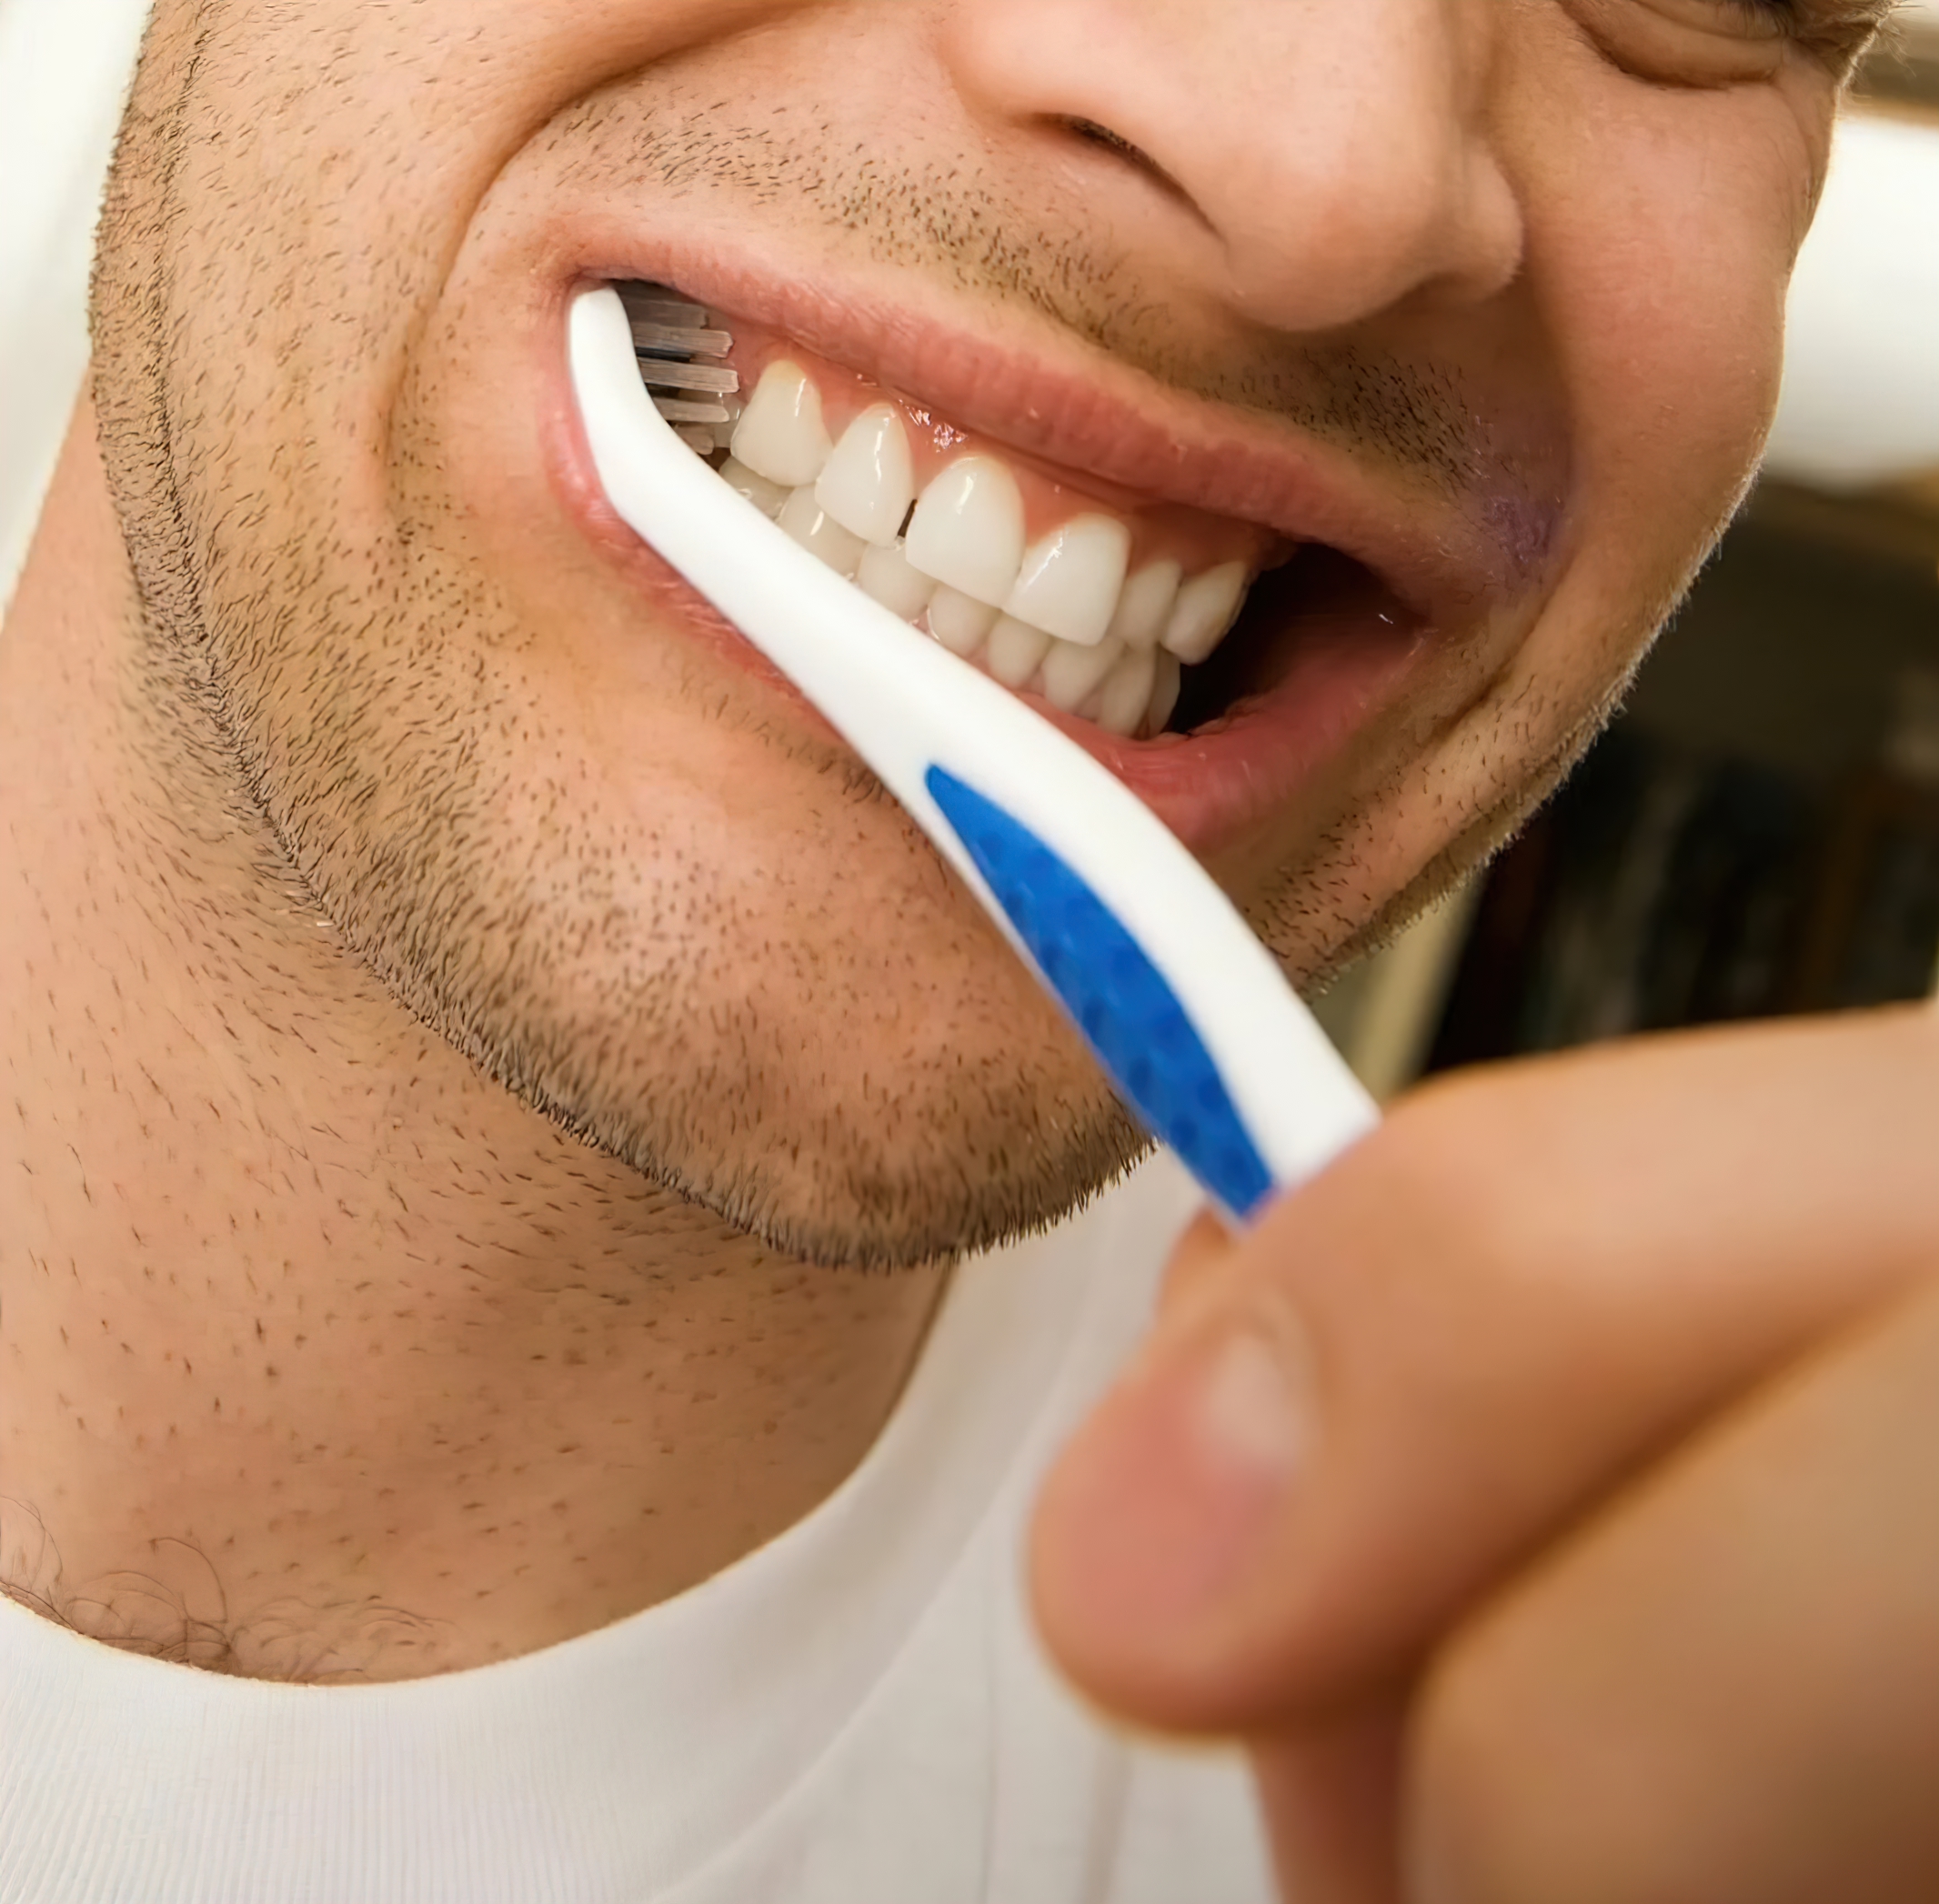 Чистка зуб г. Чистим зубы!. Контрольная чистка зубов. Зубная щётка для всех зубов сразу. День чистки зубов.